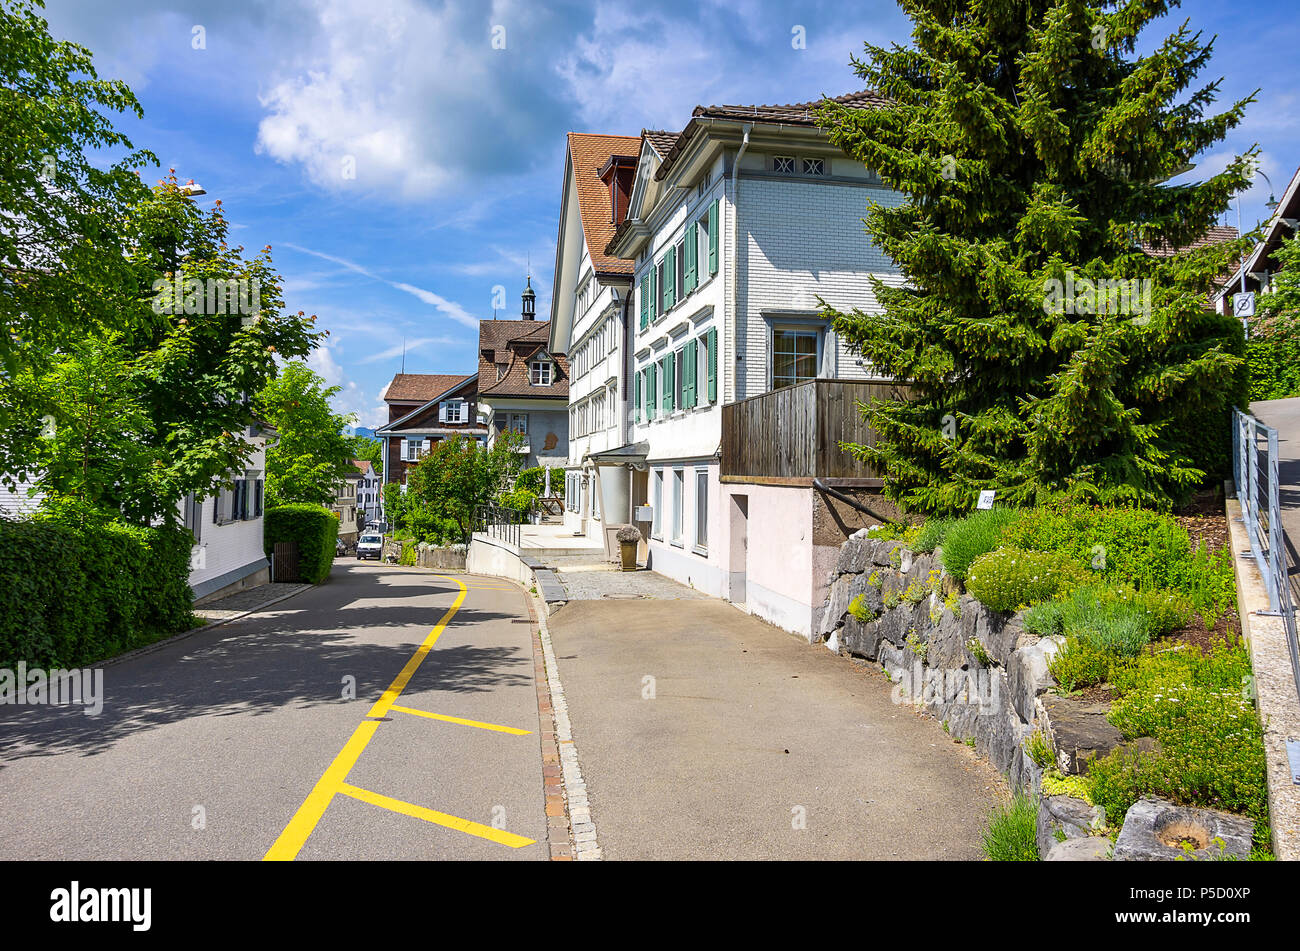 Quiet street in the village of Gais, canton Appenzell Ausserrhoden, Switzerland. Stock Photo